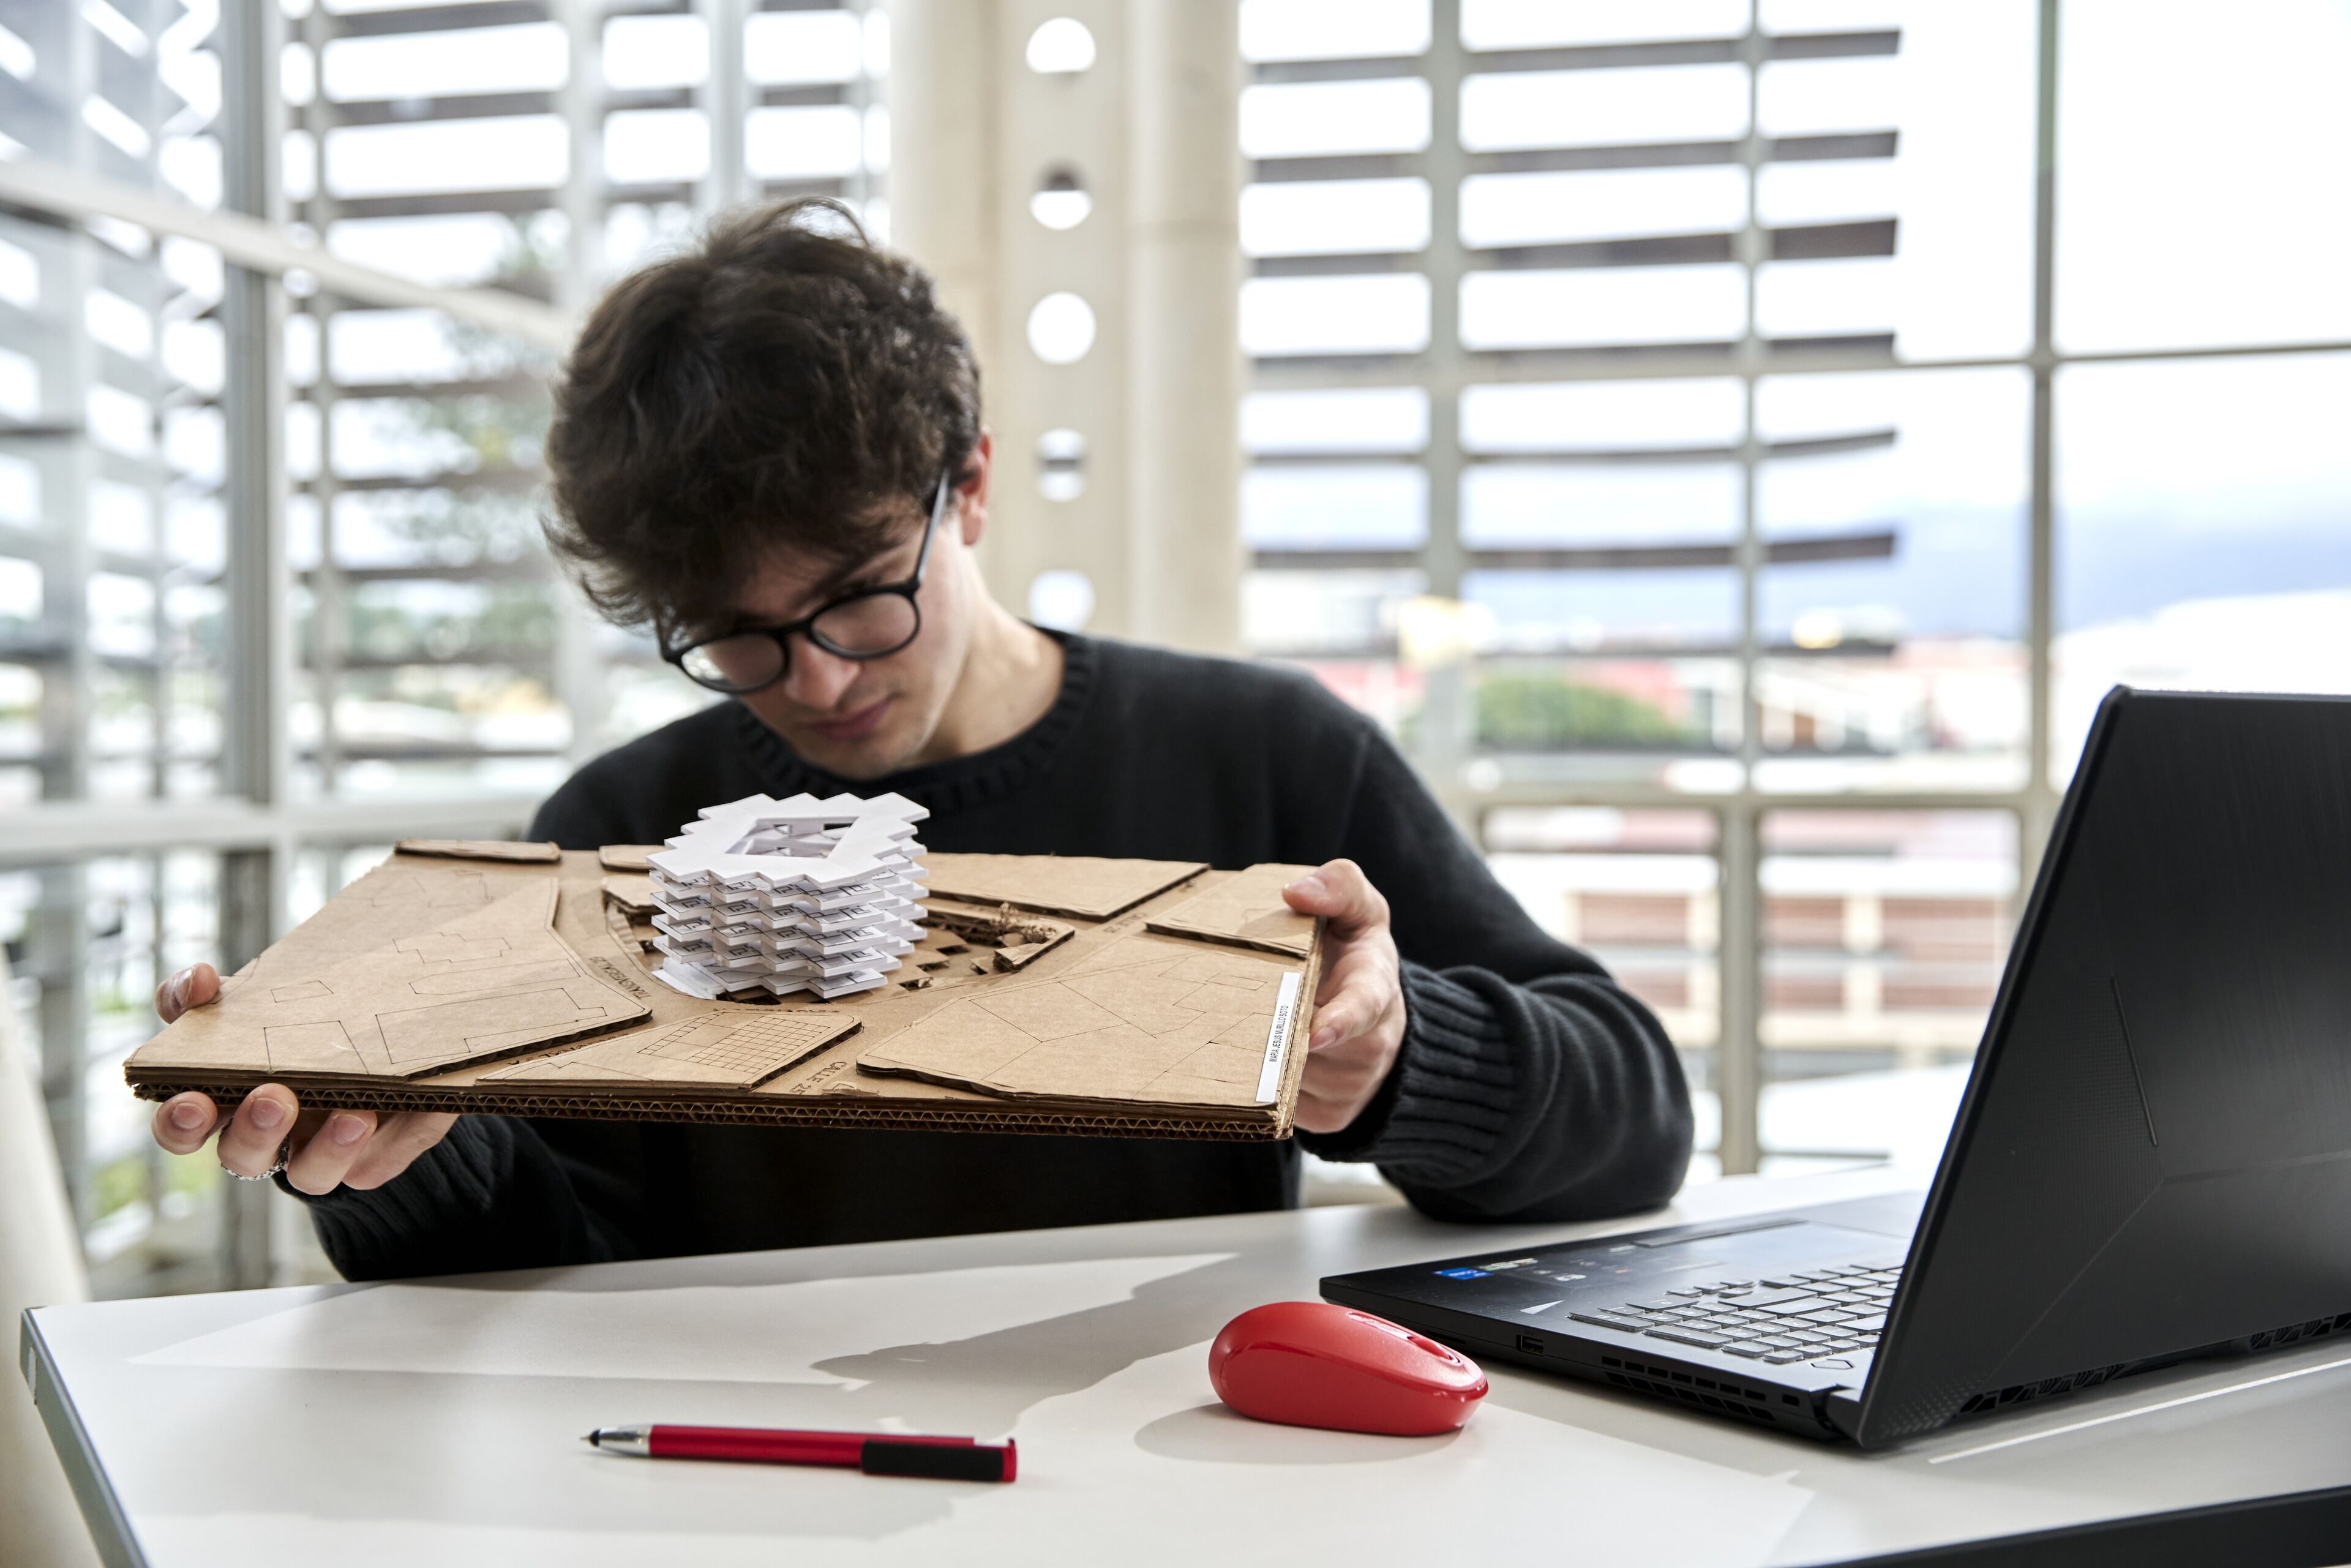 ImageUn arquitecto joven observa atentamente un modelo arquitectónico blanco sobre una base de cartón, con un portátil y un ratón rojo sobre la mesa.